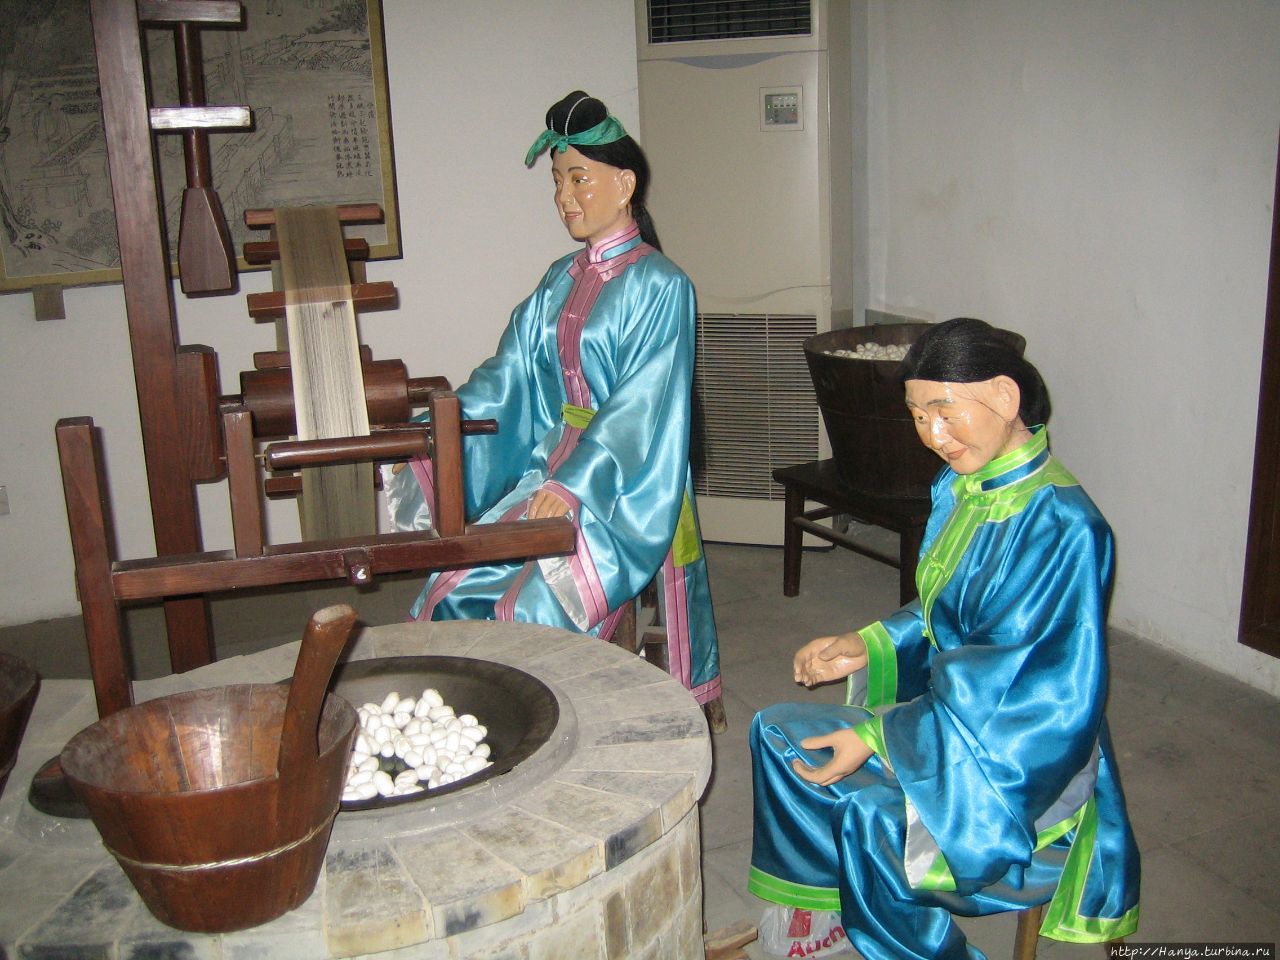 Сучжоу — родина шелкопрядения. Музей шелка Сучжоу, Китай